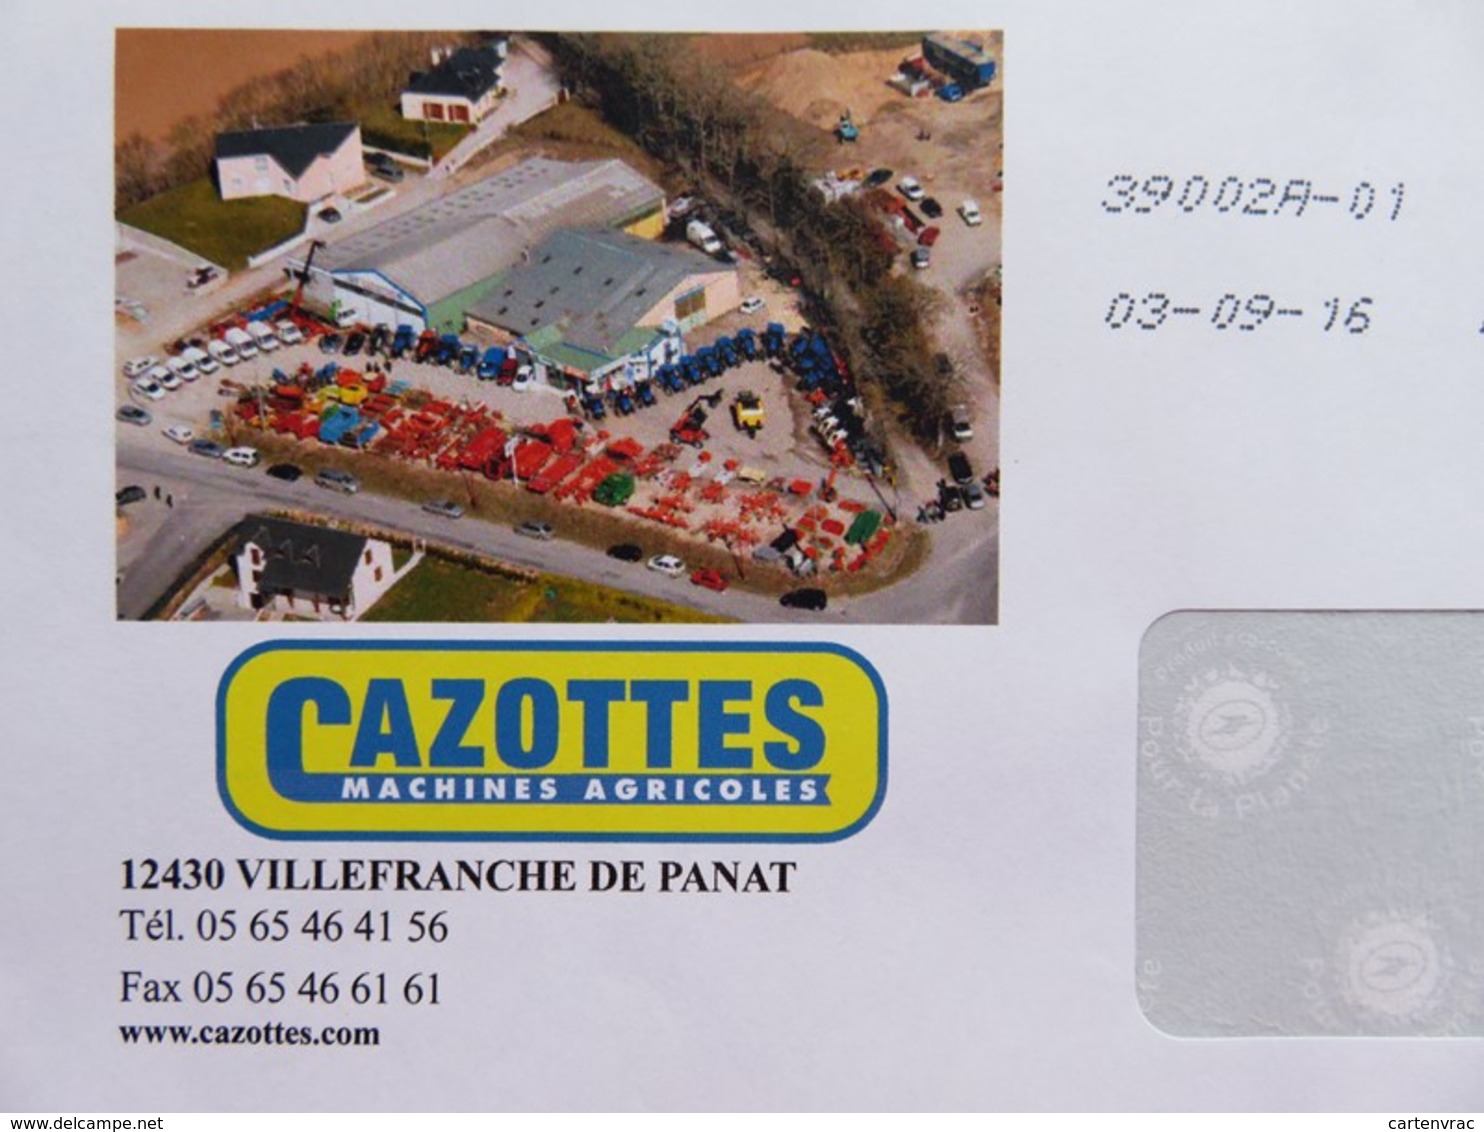 PAP - Enveloppe Lettre Verte - Feuille Verte - Repiquage Cazottes - Machines Agricoles (Aveyron) - 03.09.16 - Prêts-à-poster:private Overprinting